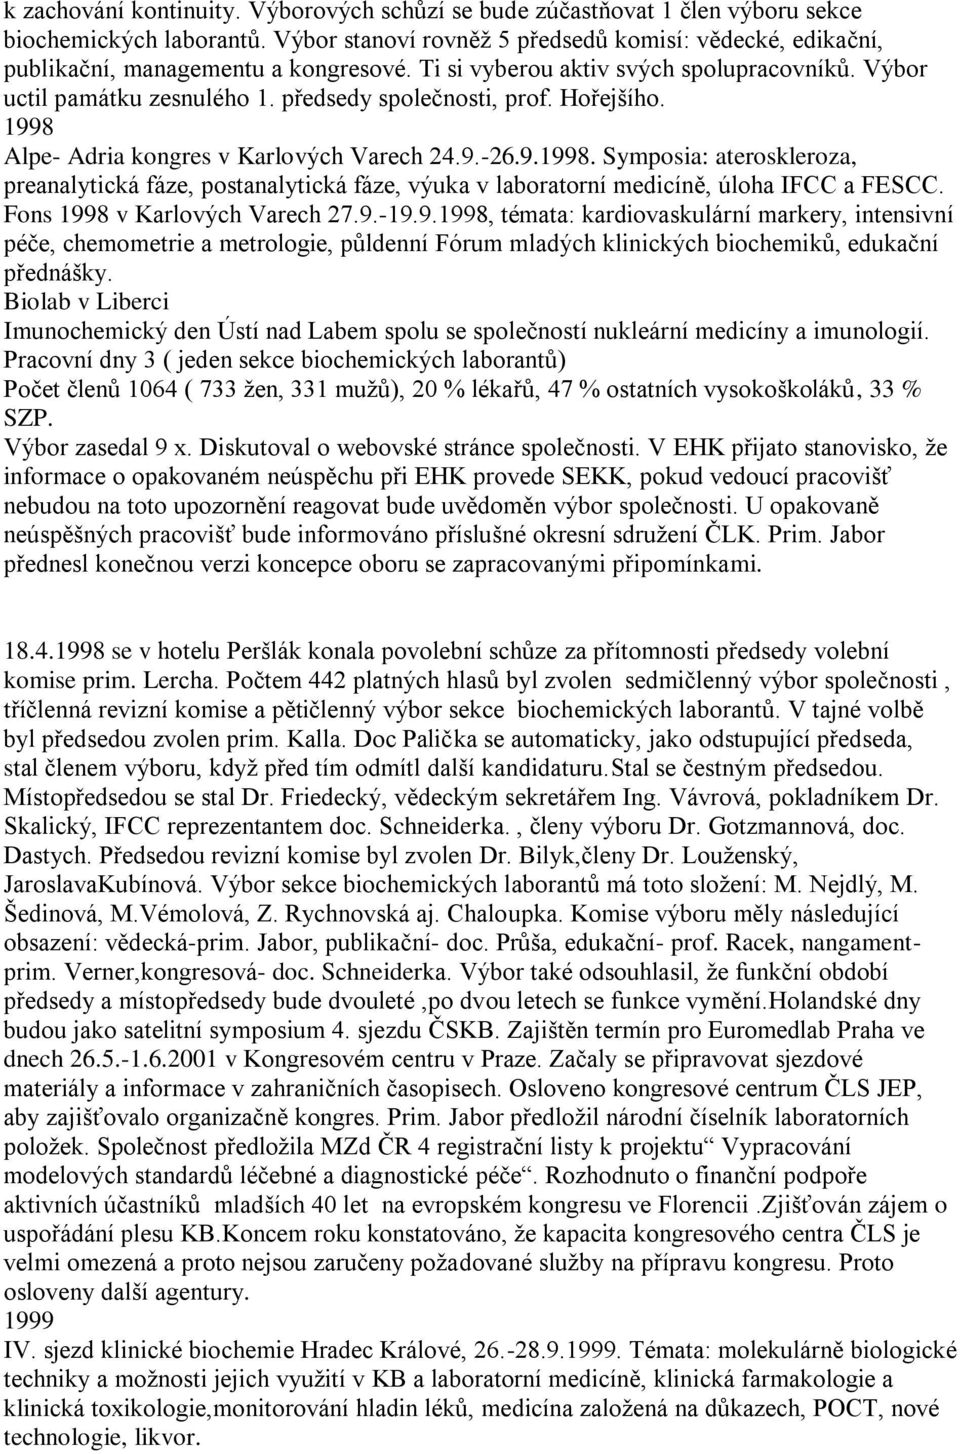 Hořejšího. 1998 Alpe- Adria kongres v Karlových Varech 24.9.-26.9.1998. Symposia: ateroskleroza, preanalytická fáze, postanalytická fáze, výuka v laboratorní medicíně, úloha IFCC a FESCC.